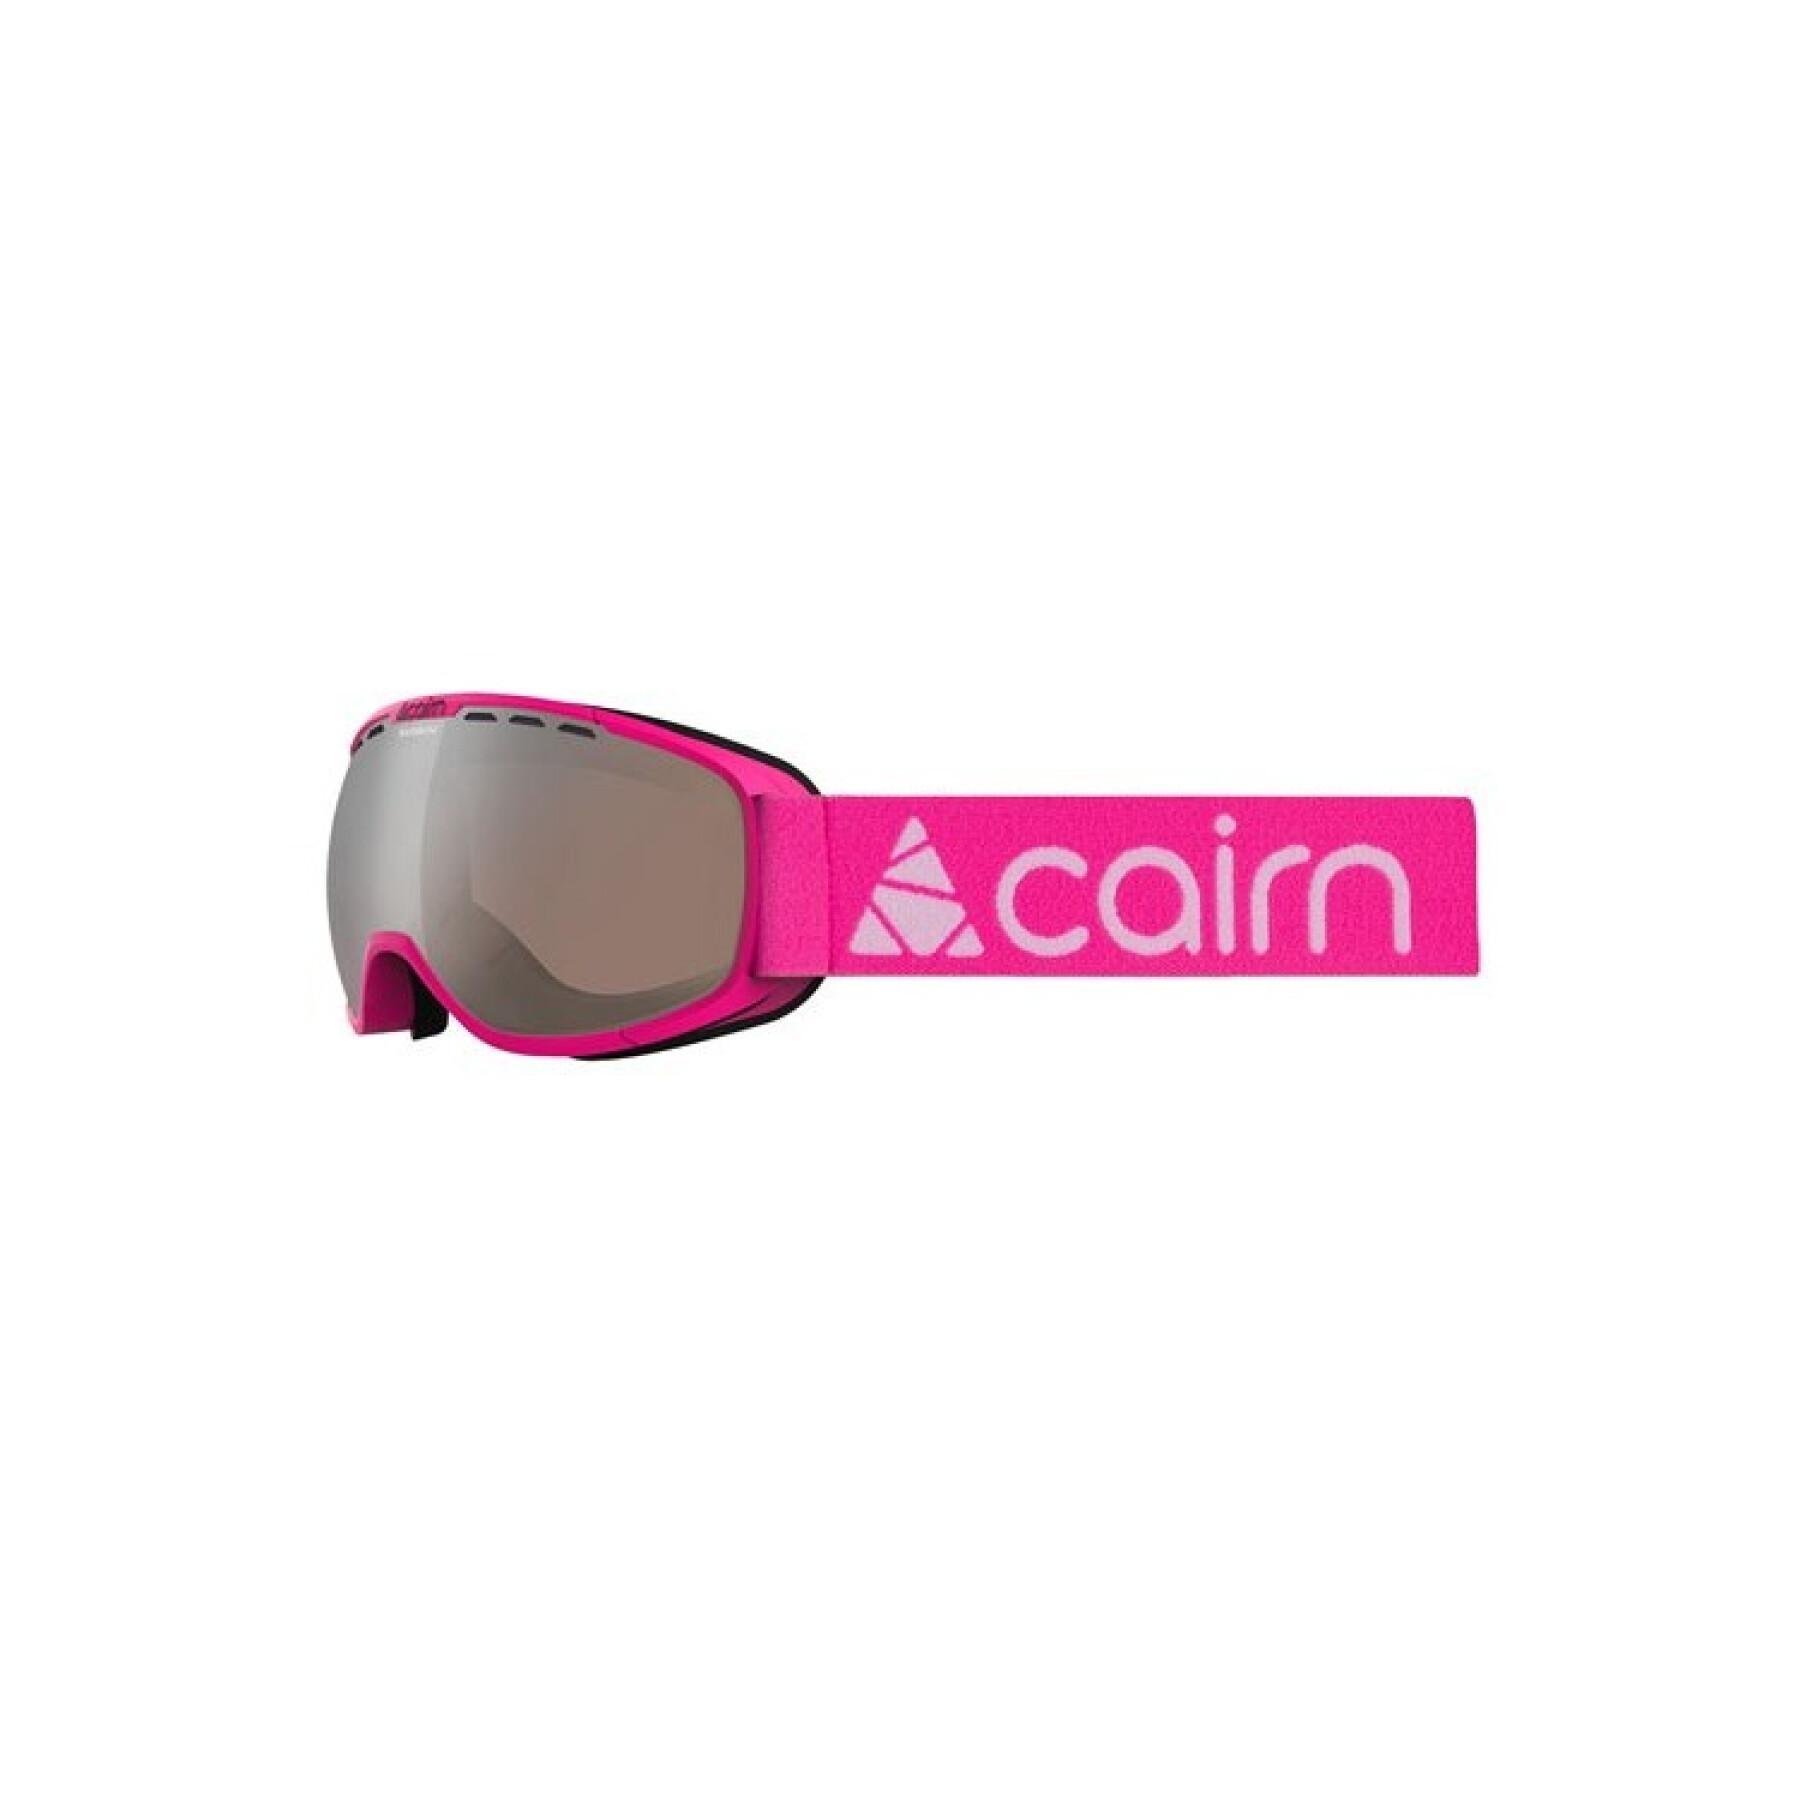 Masque de ski femme Cairn Rainbow SPX3 - Masques de Ski